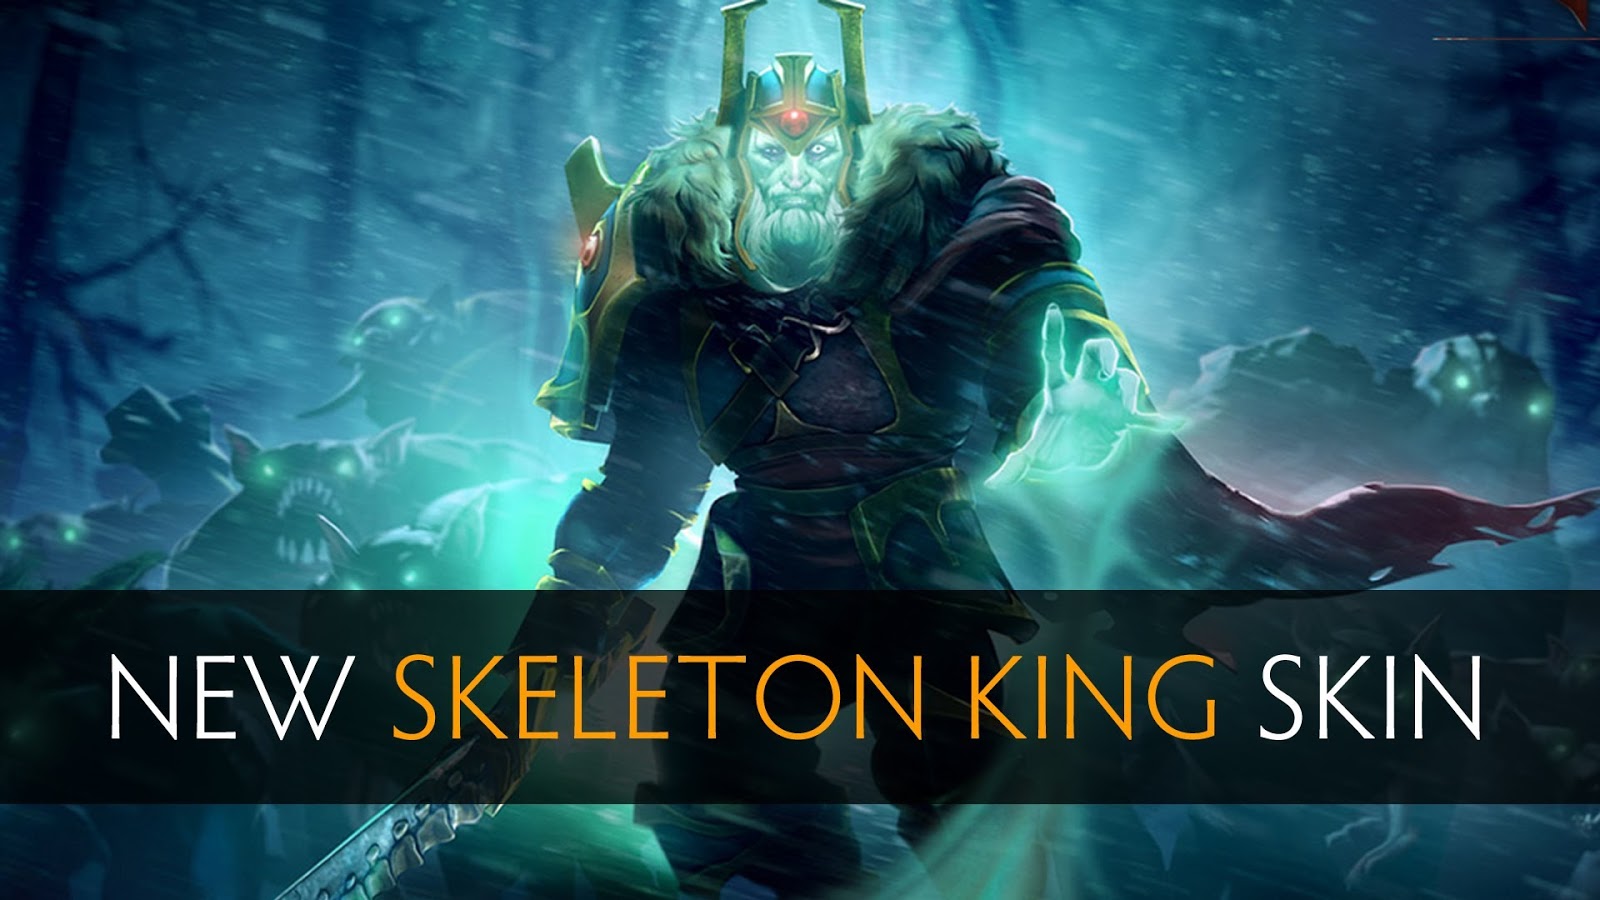 Skeleton king in dota 2 фото 26